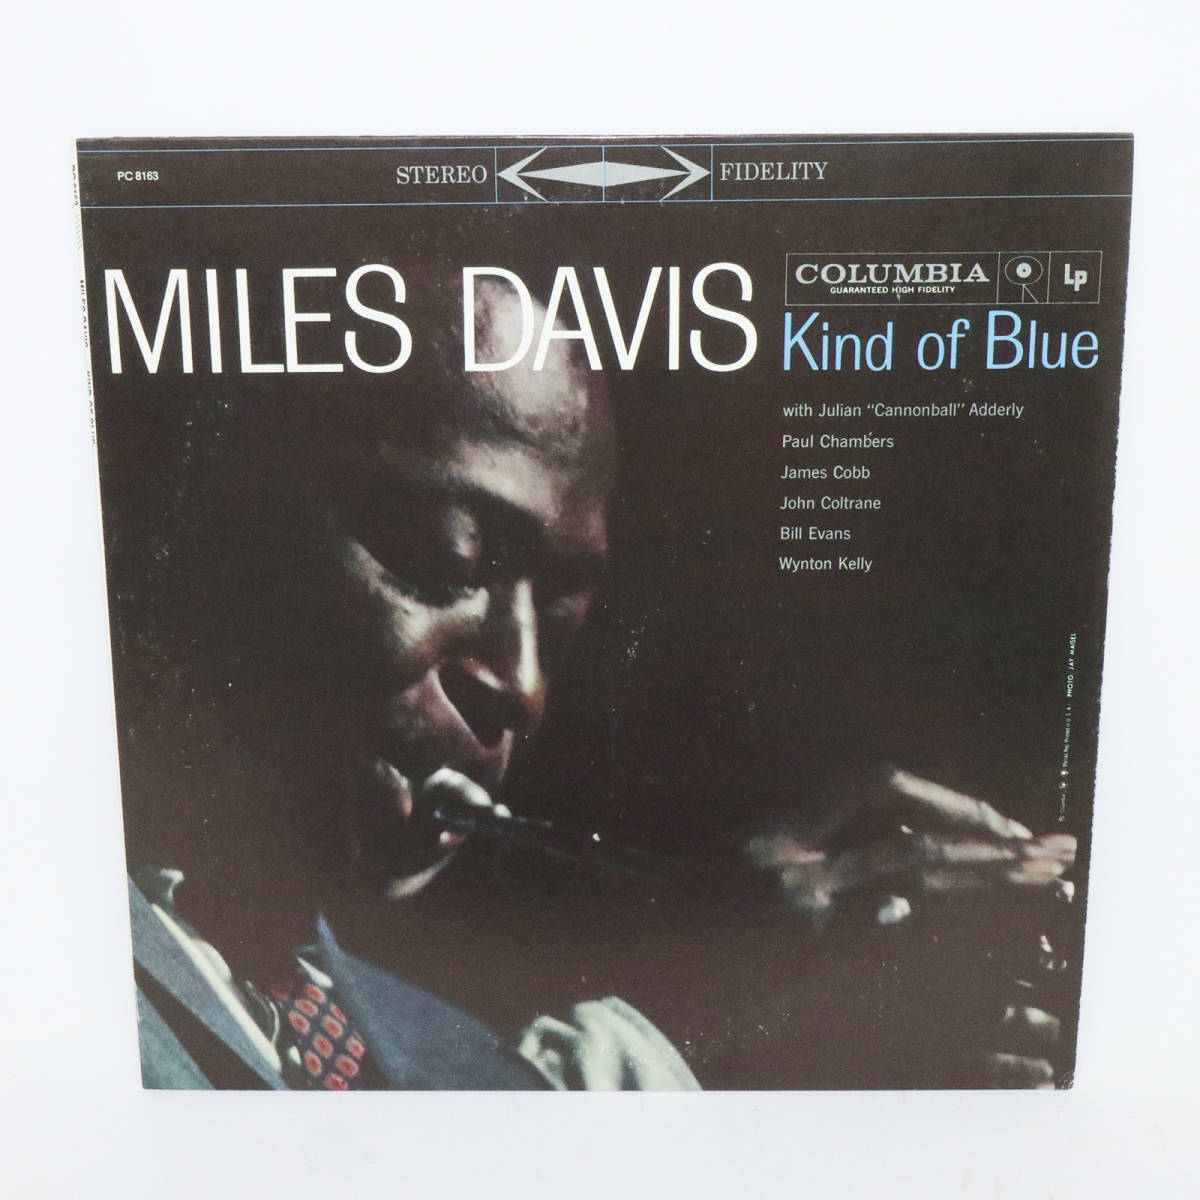 47020396;【国内盤】Miles Davis / Kind Of Blue - JChere雅虎拍卖代购